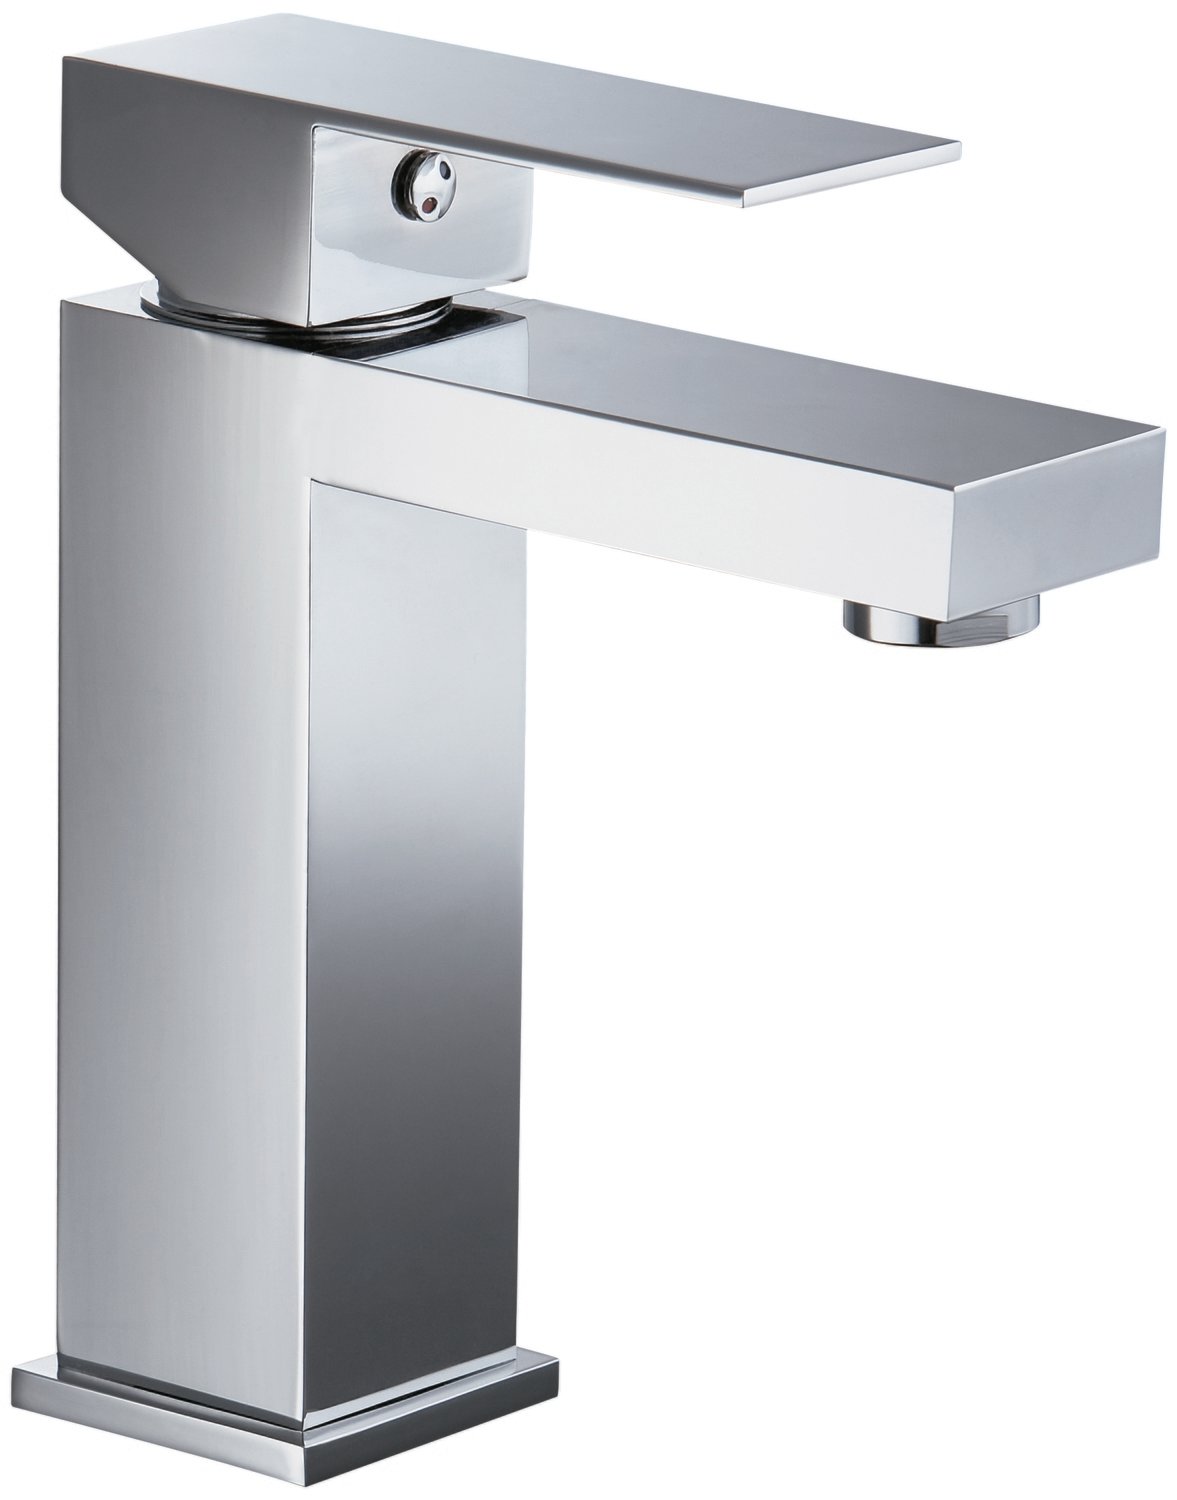 Single-lever lavatory faucet